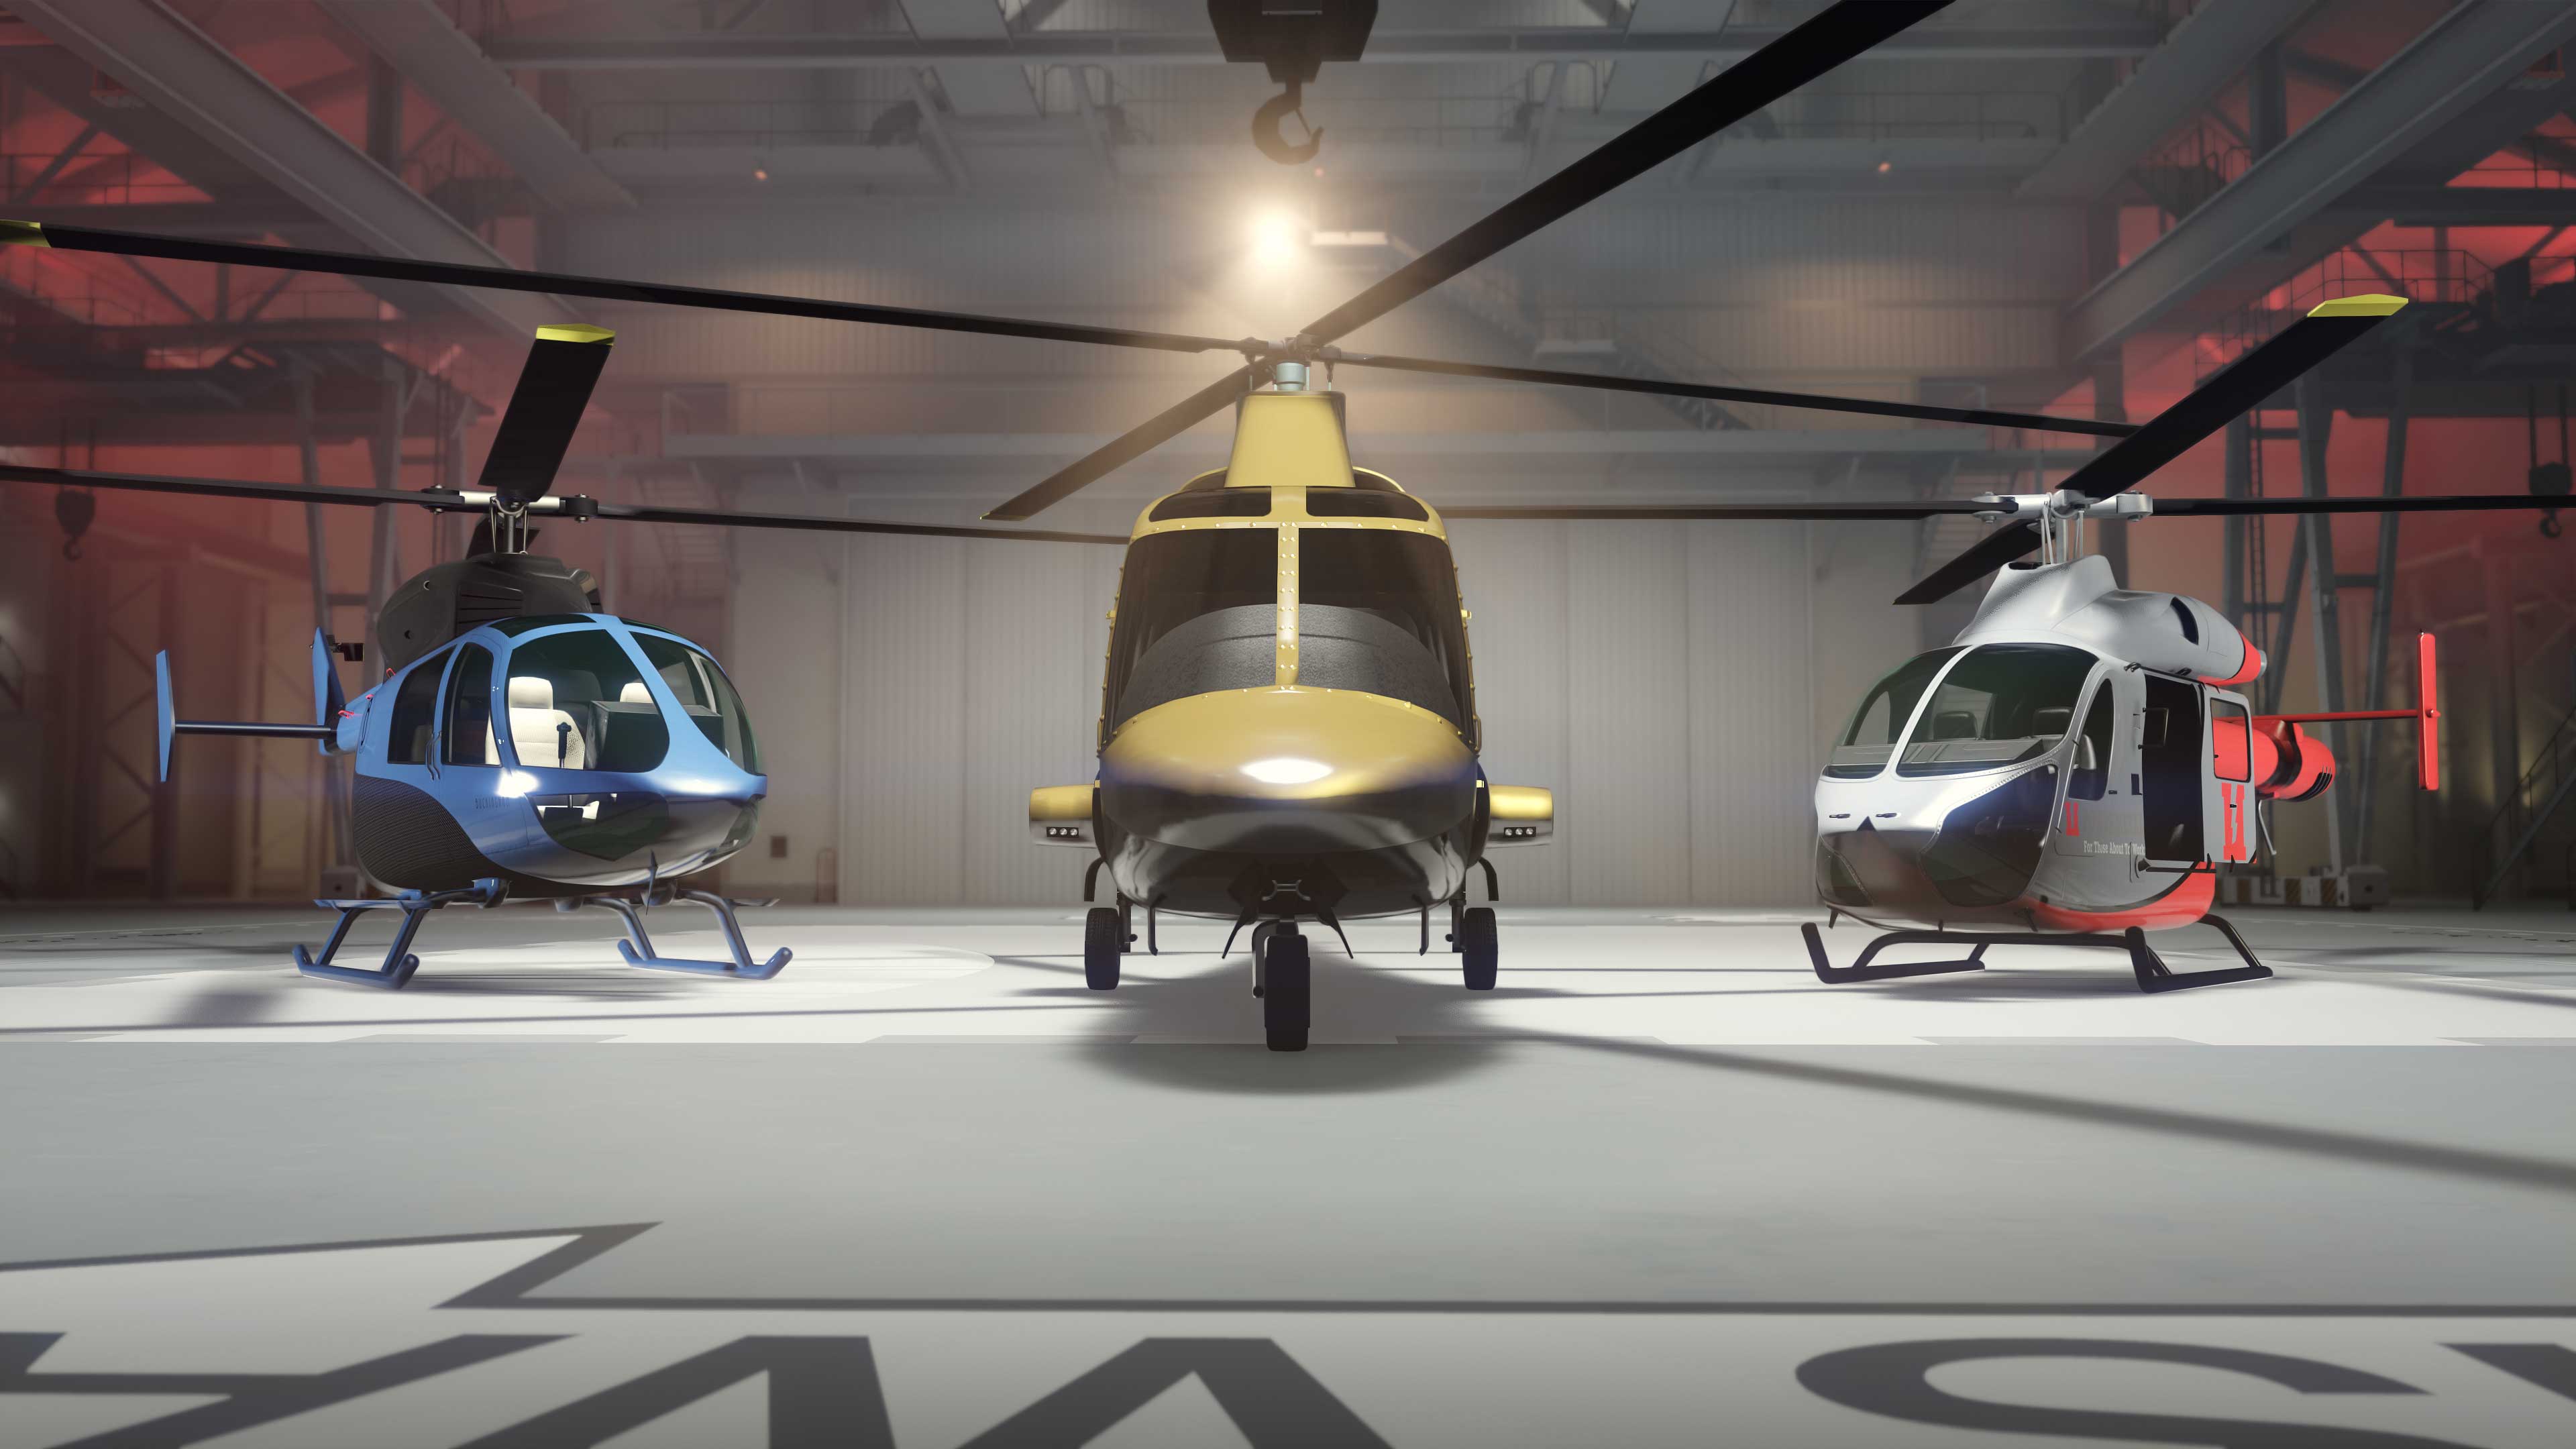 Três helicópteros Buckingham um ao lado do outro em um hangar.